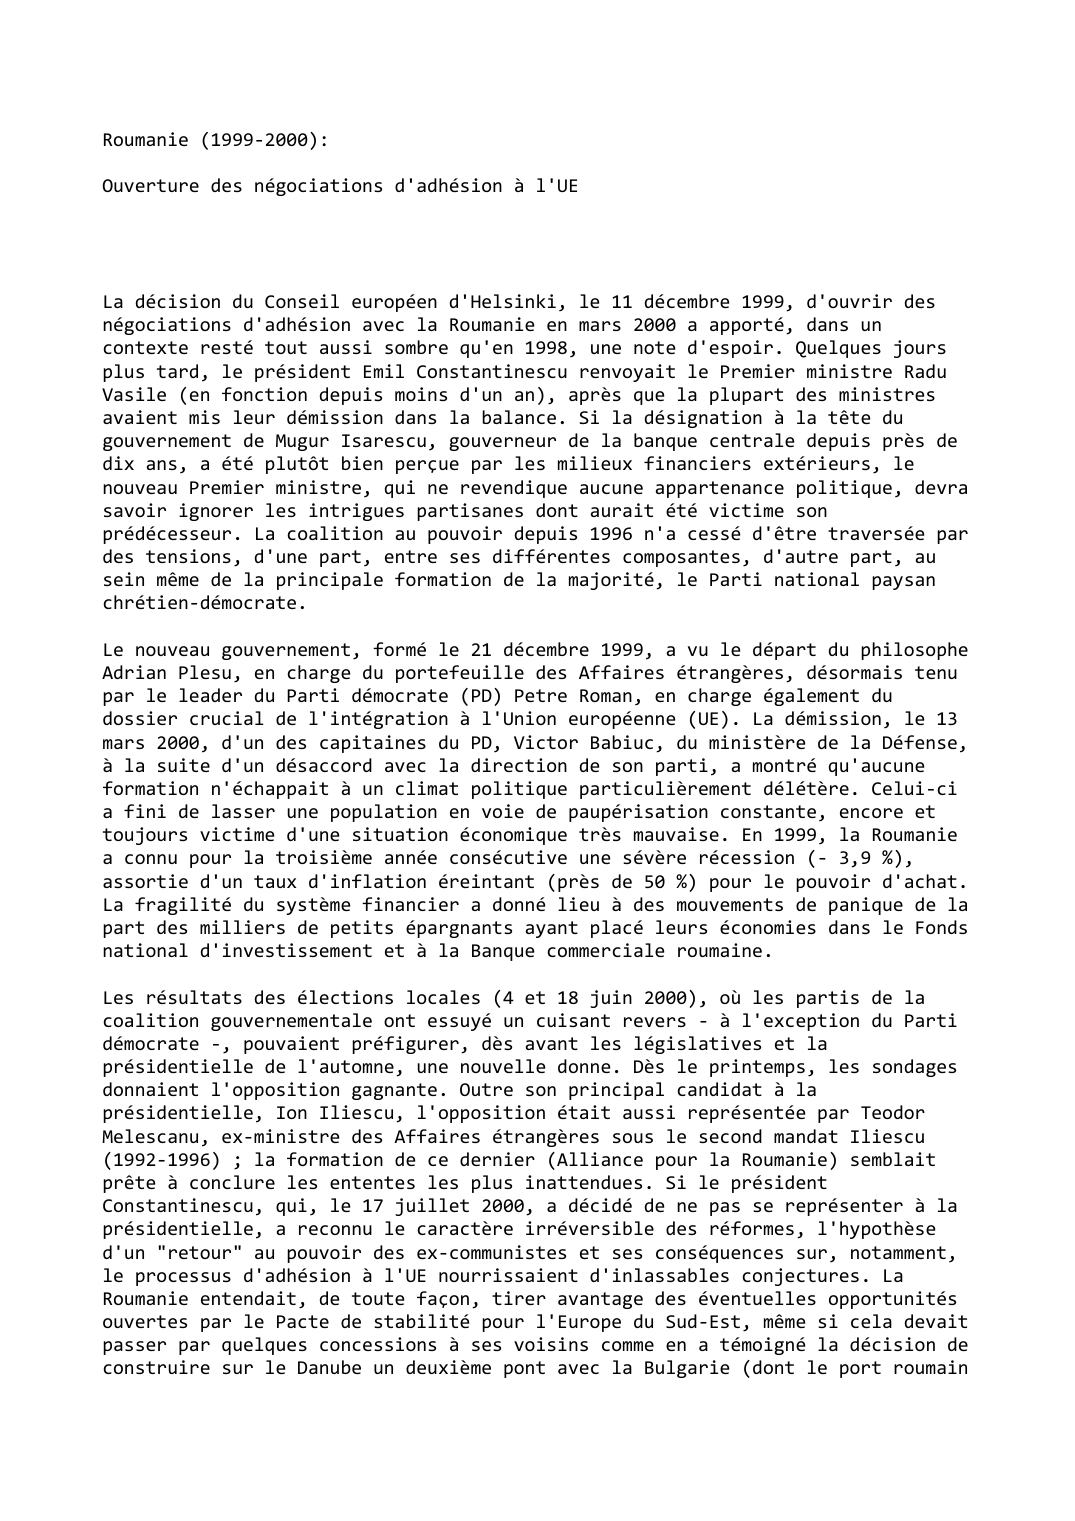 Prévisualisation du document Roumanie (1999-2000):

Ouverture des négociations d'adhésion à l'UE